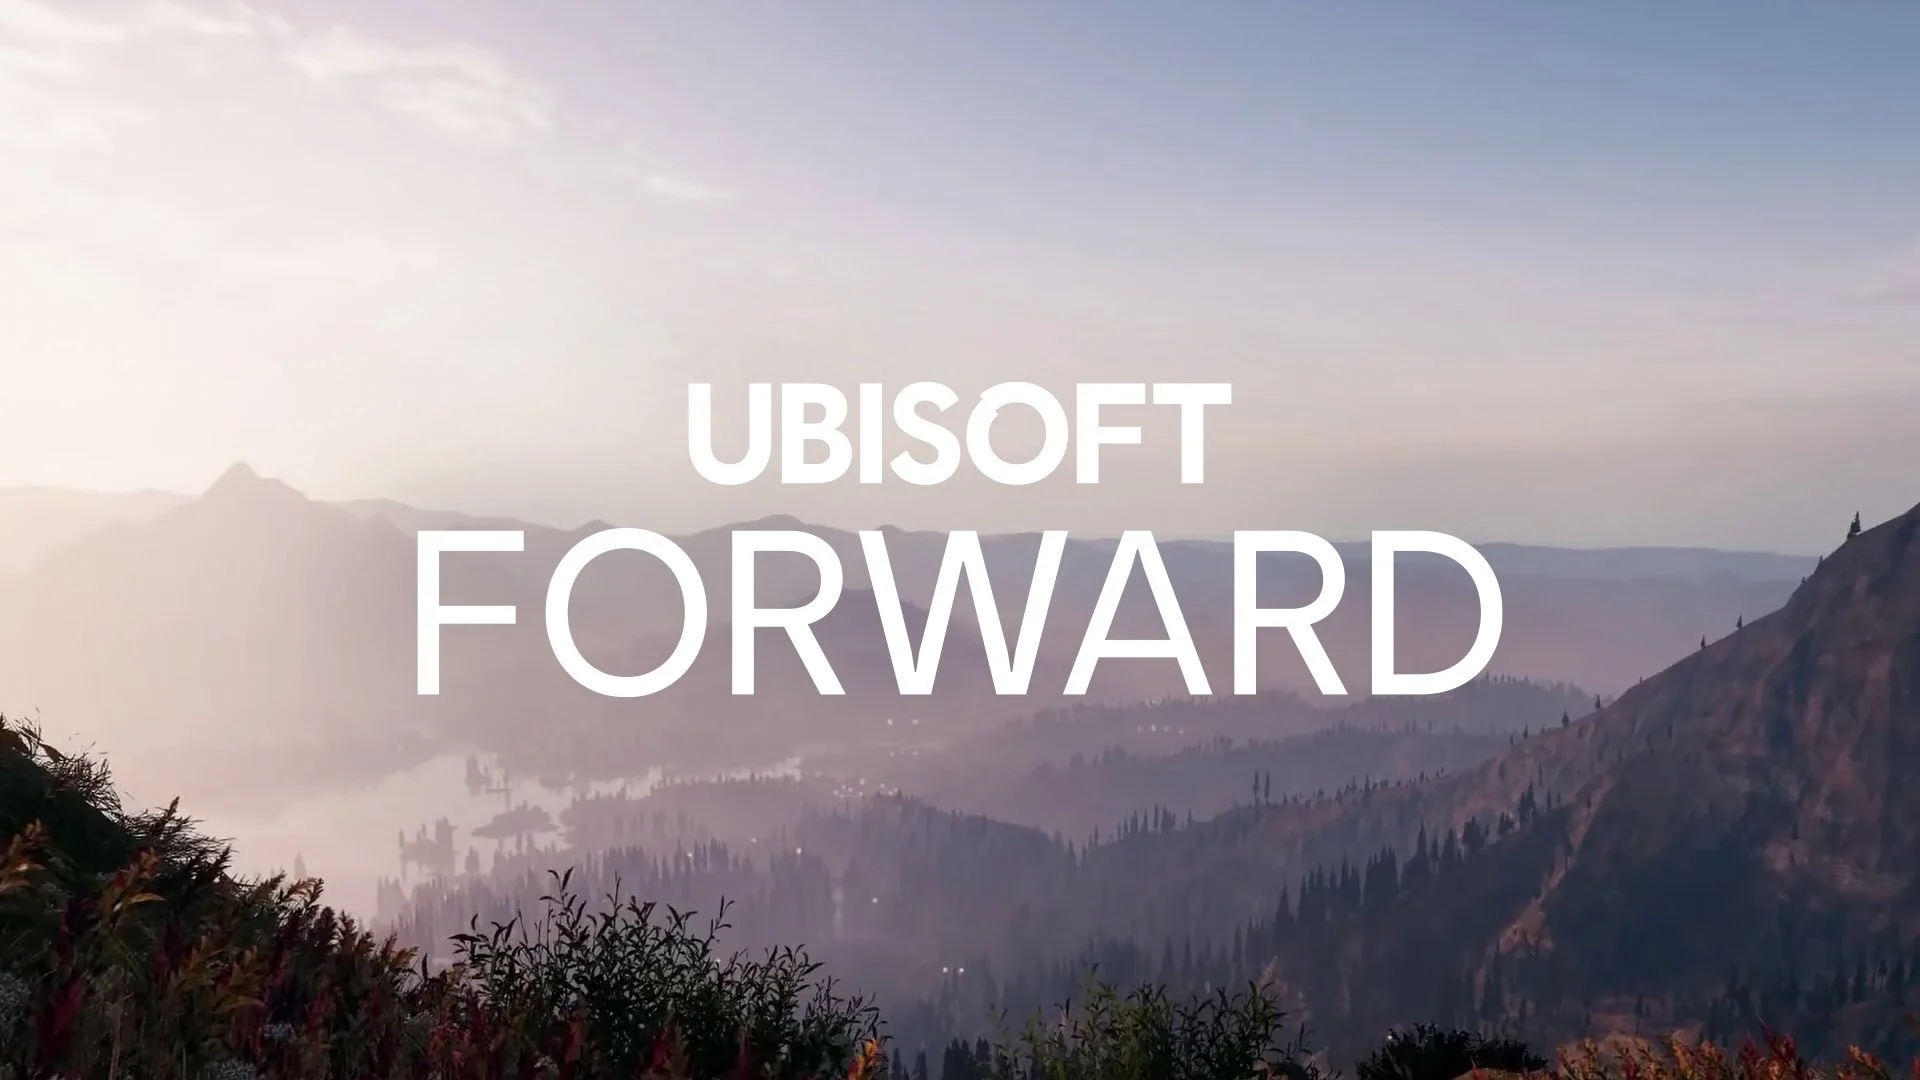 Цифровая конференция Ubisoft пройдёт аж 12 июля - фото 1